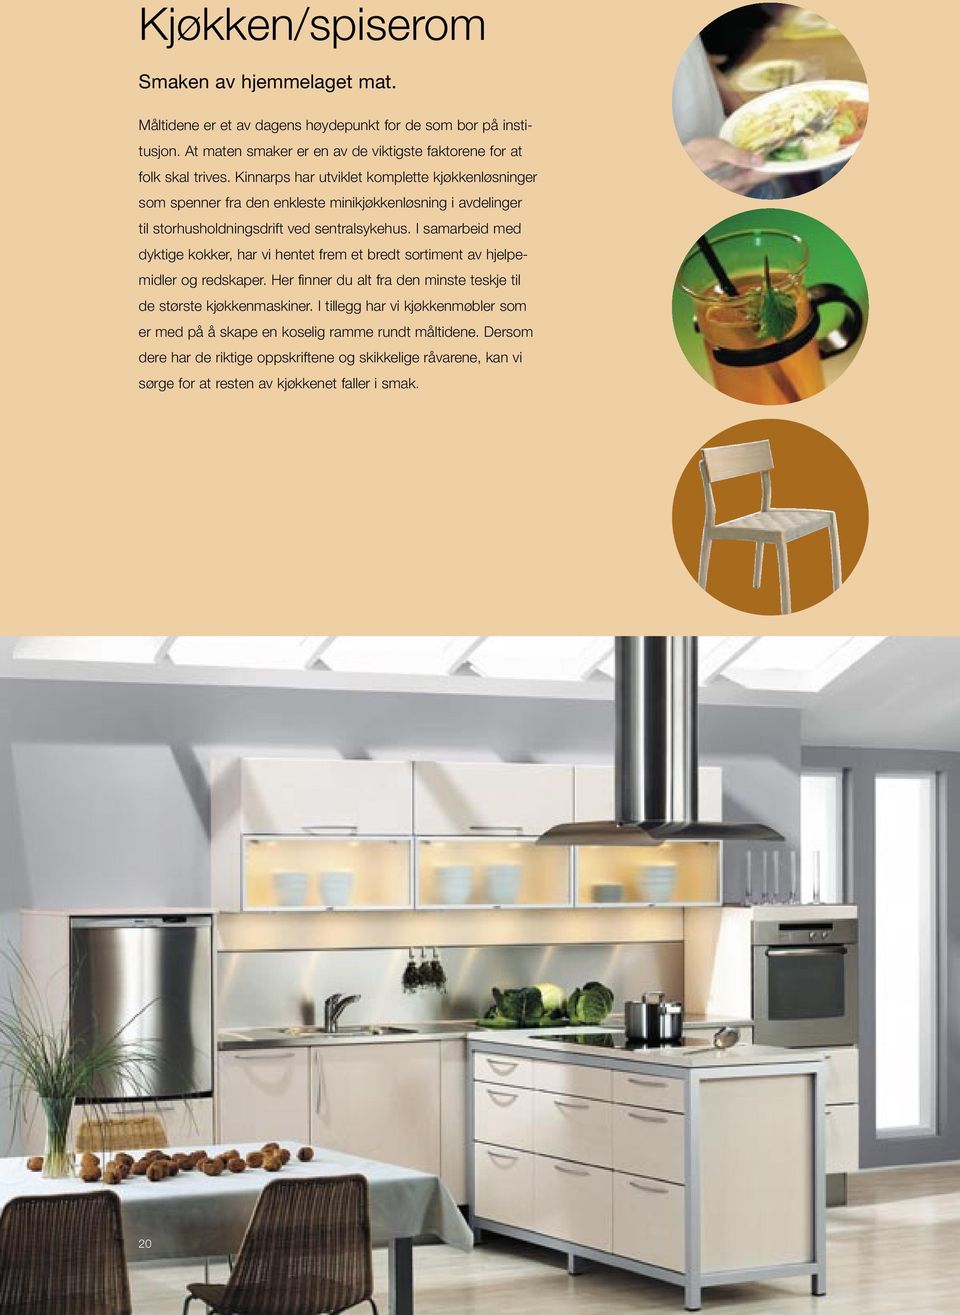 Kinnarps har utviklet komplette kjøkkenløsninger som spenner fra den enkleste minikjøkkenløsning i avdelinger til storhusholdningsdrift ved sentralsykehus.